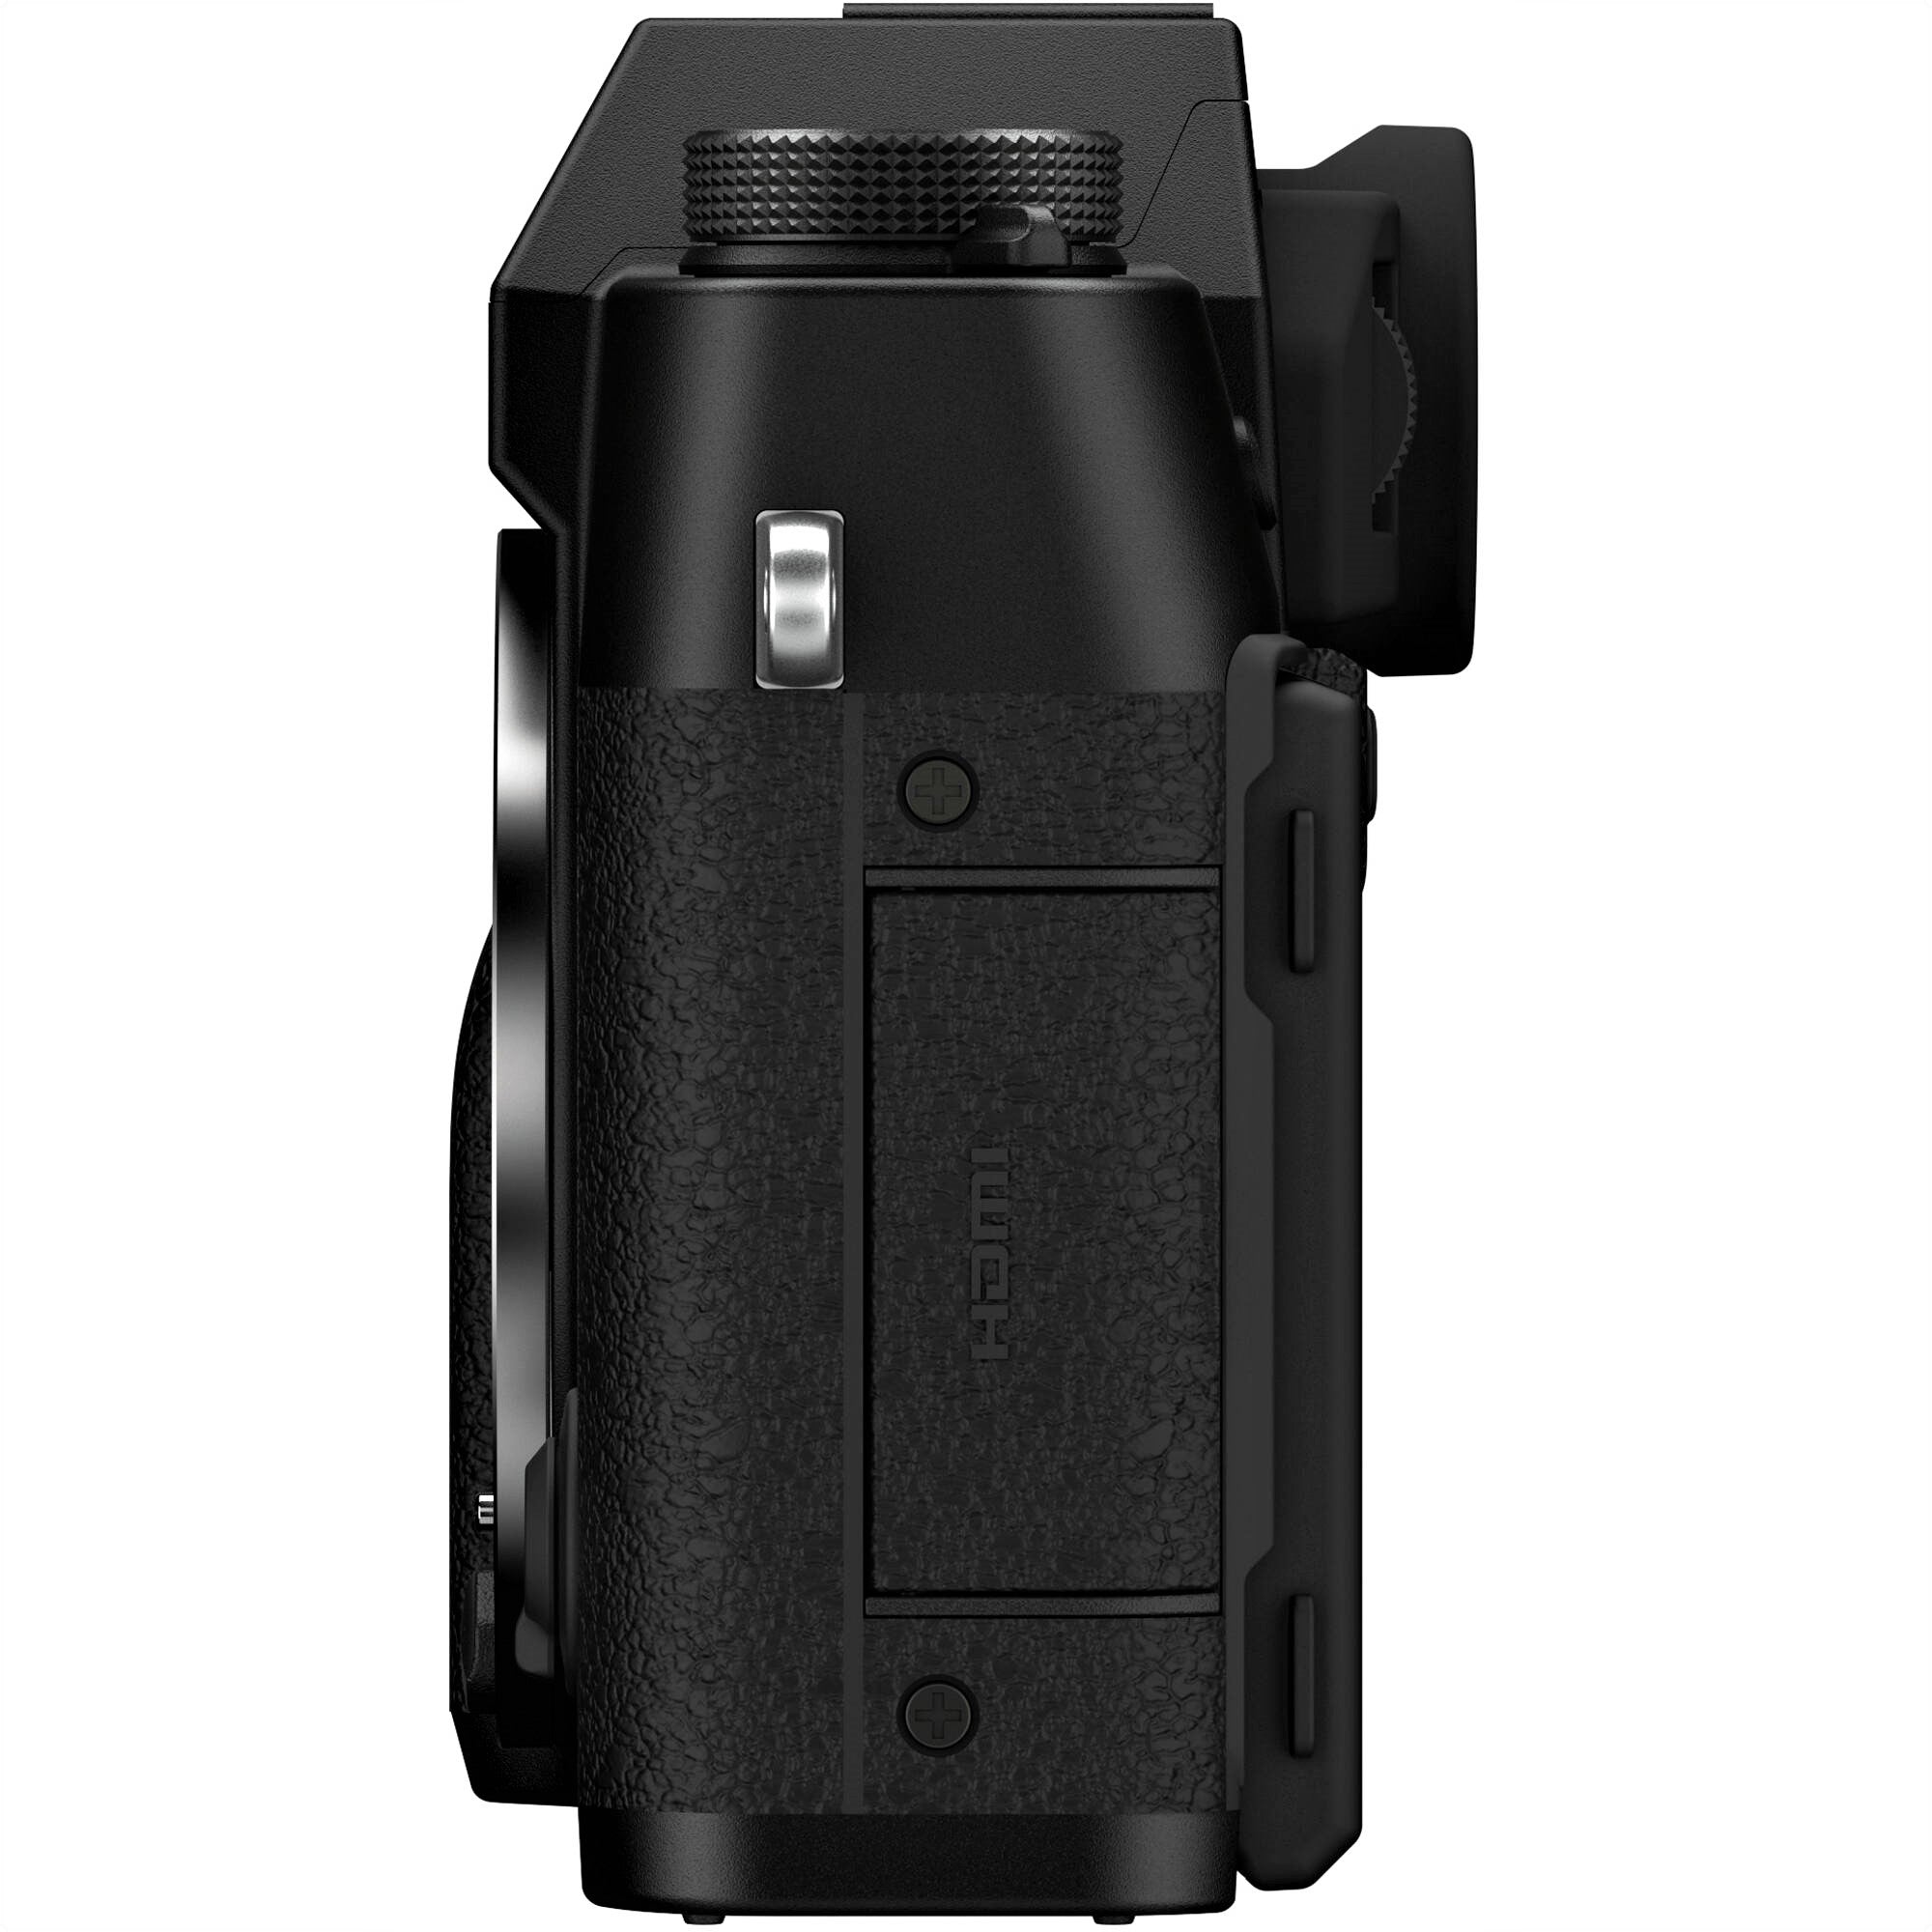 Fujifilm X-T30 II Mirrorless Camera (Black) - Side View